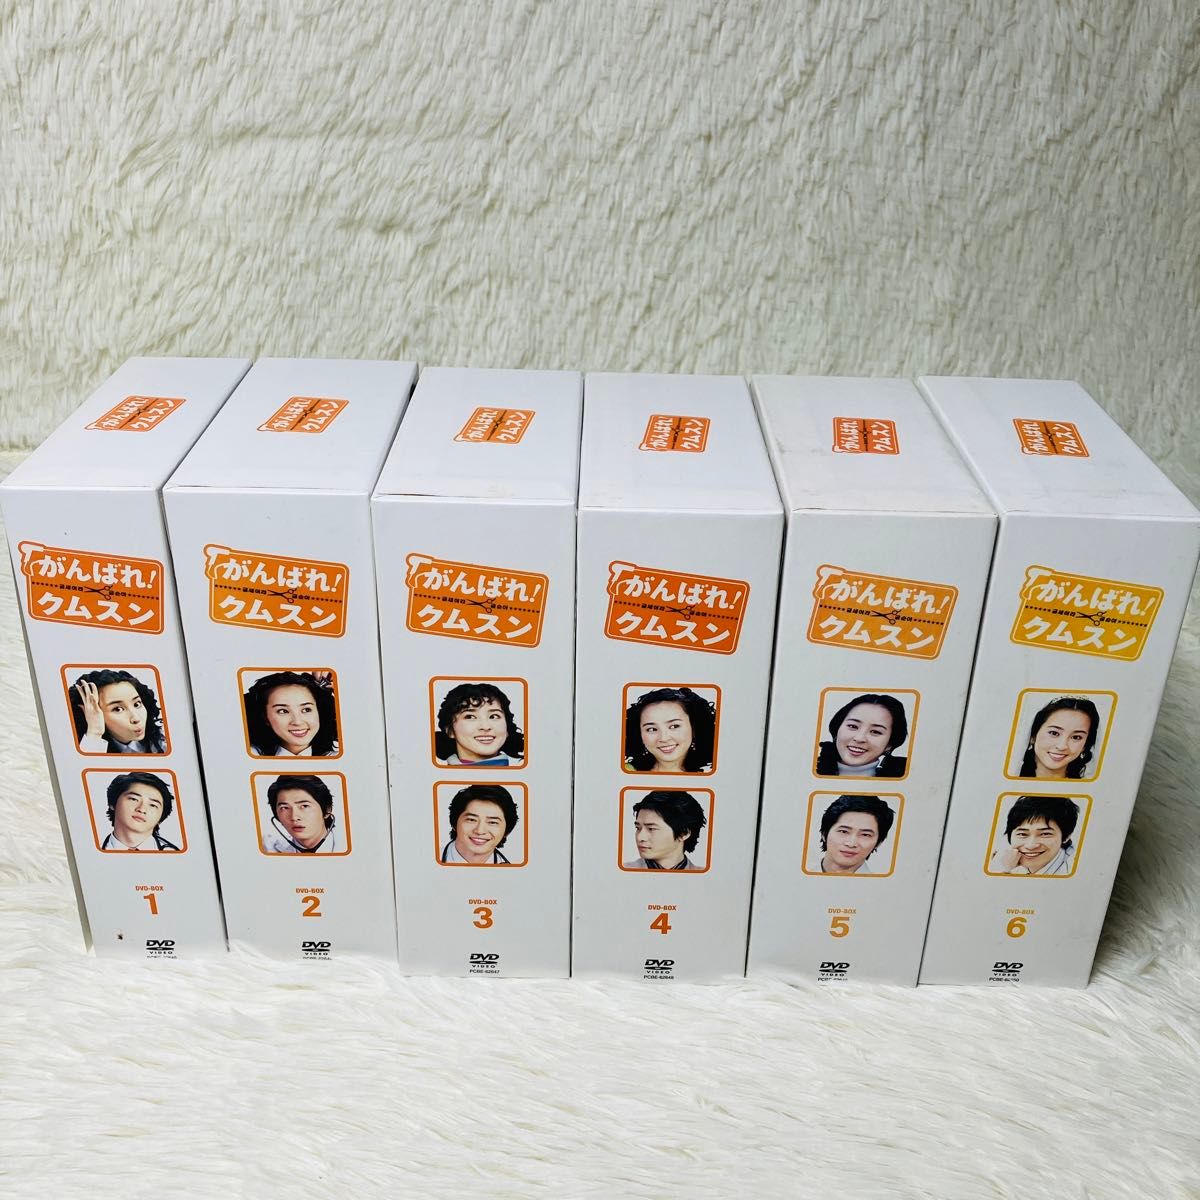 がんばれ! クムスン DVD BOX 1-6 全巻セット 計41枚